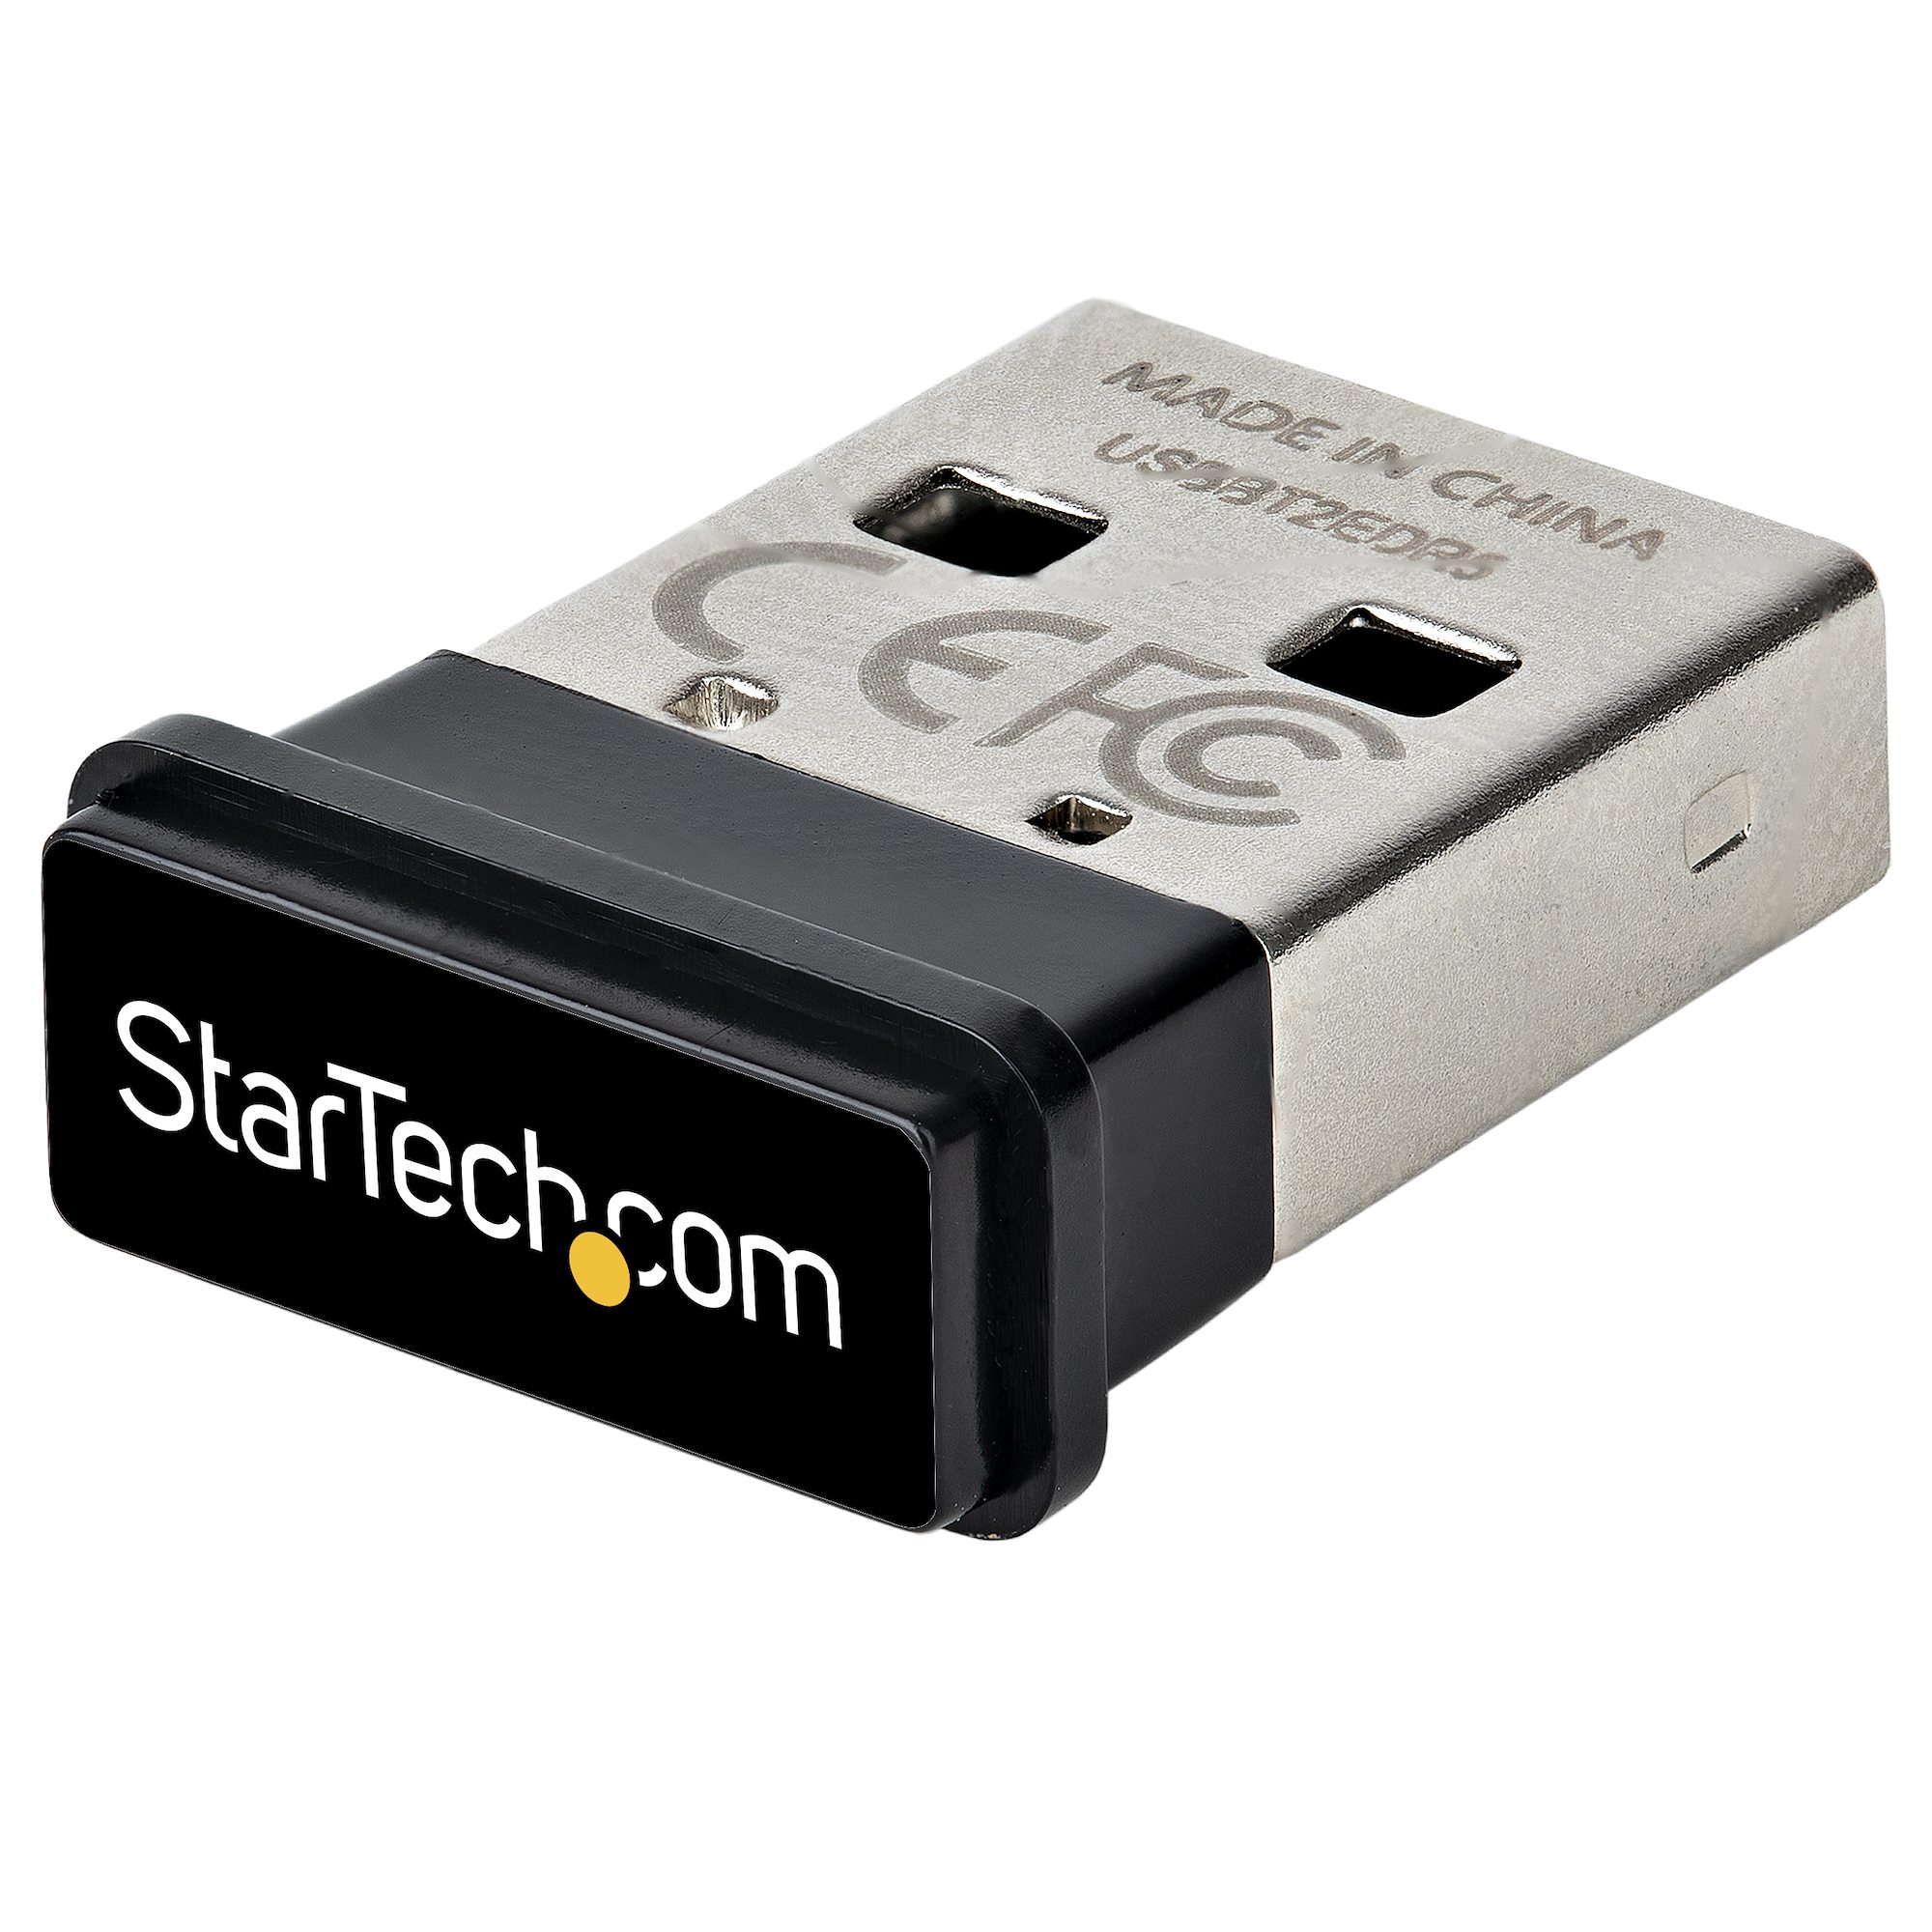 moordenaar Bespreken melodie USB Bluetooth 5.0 Adapter/Dongle for PC - Bluetooth & Telecom Adapters |  StarTech.com